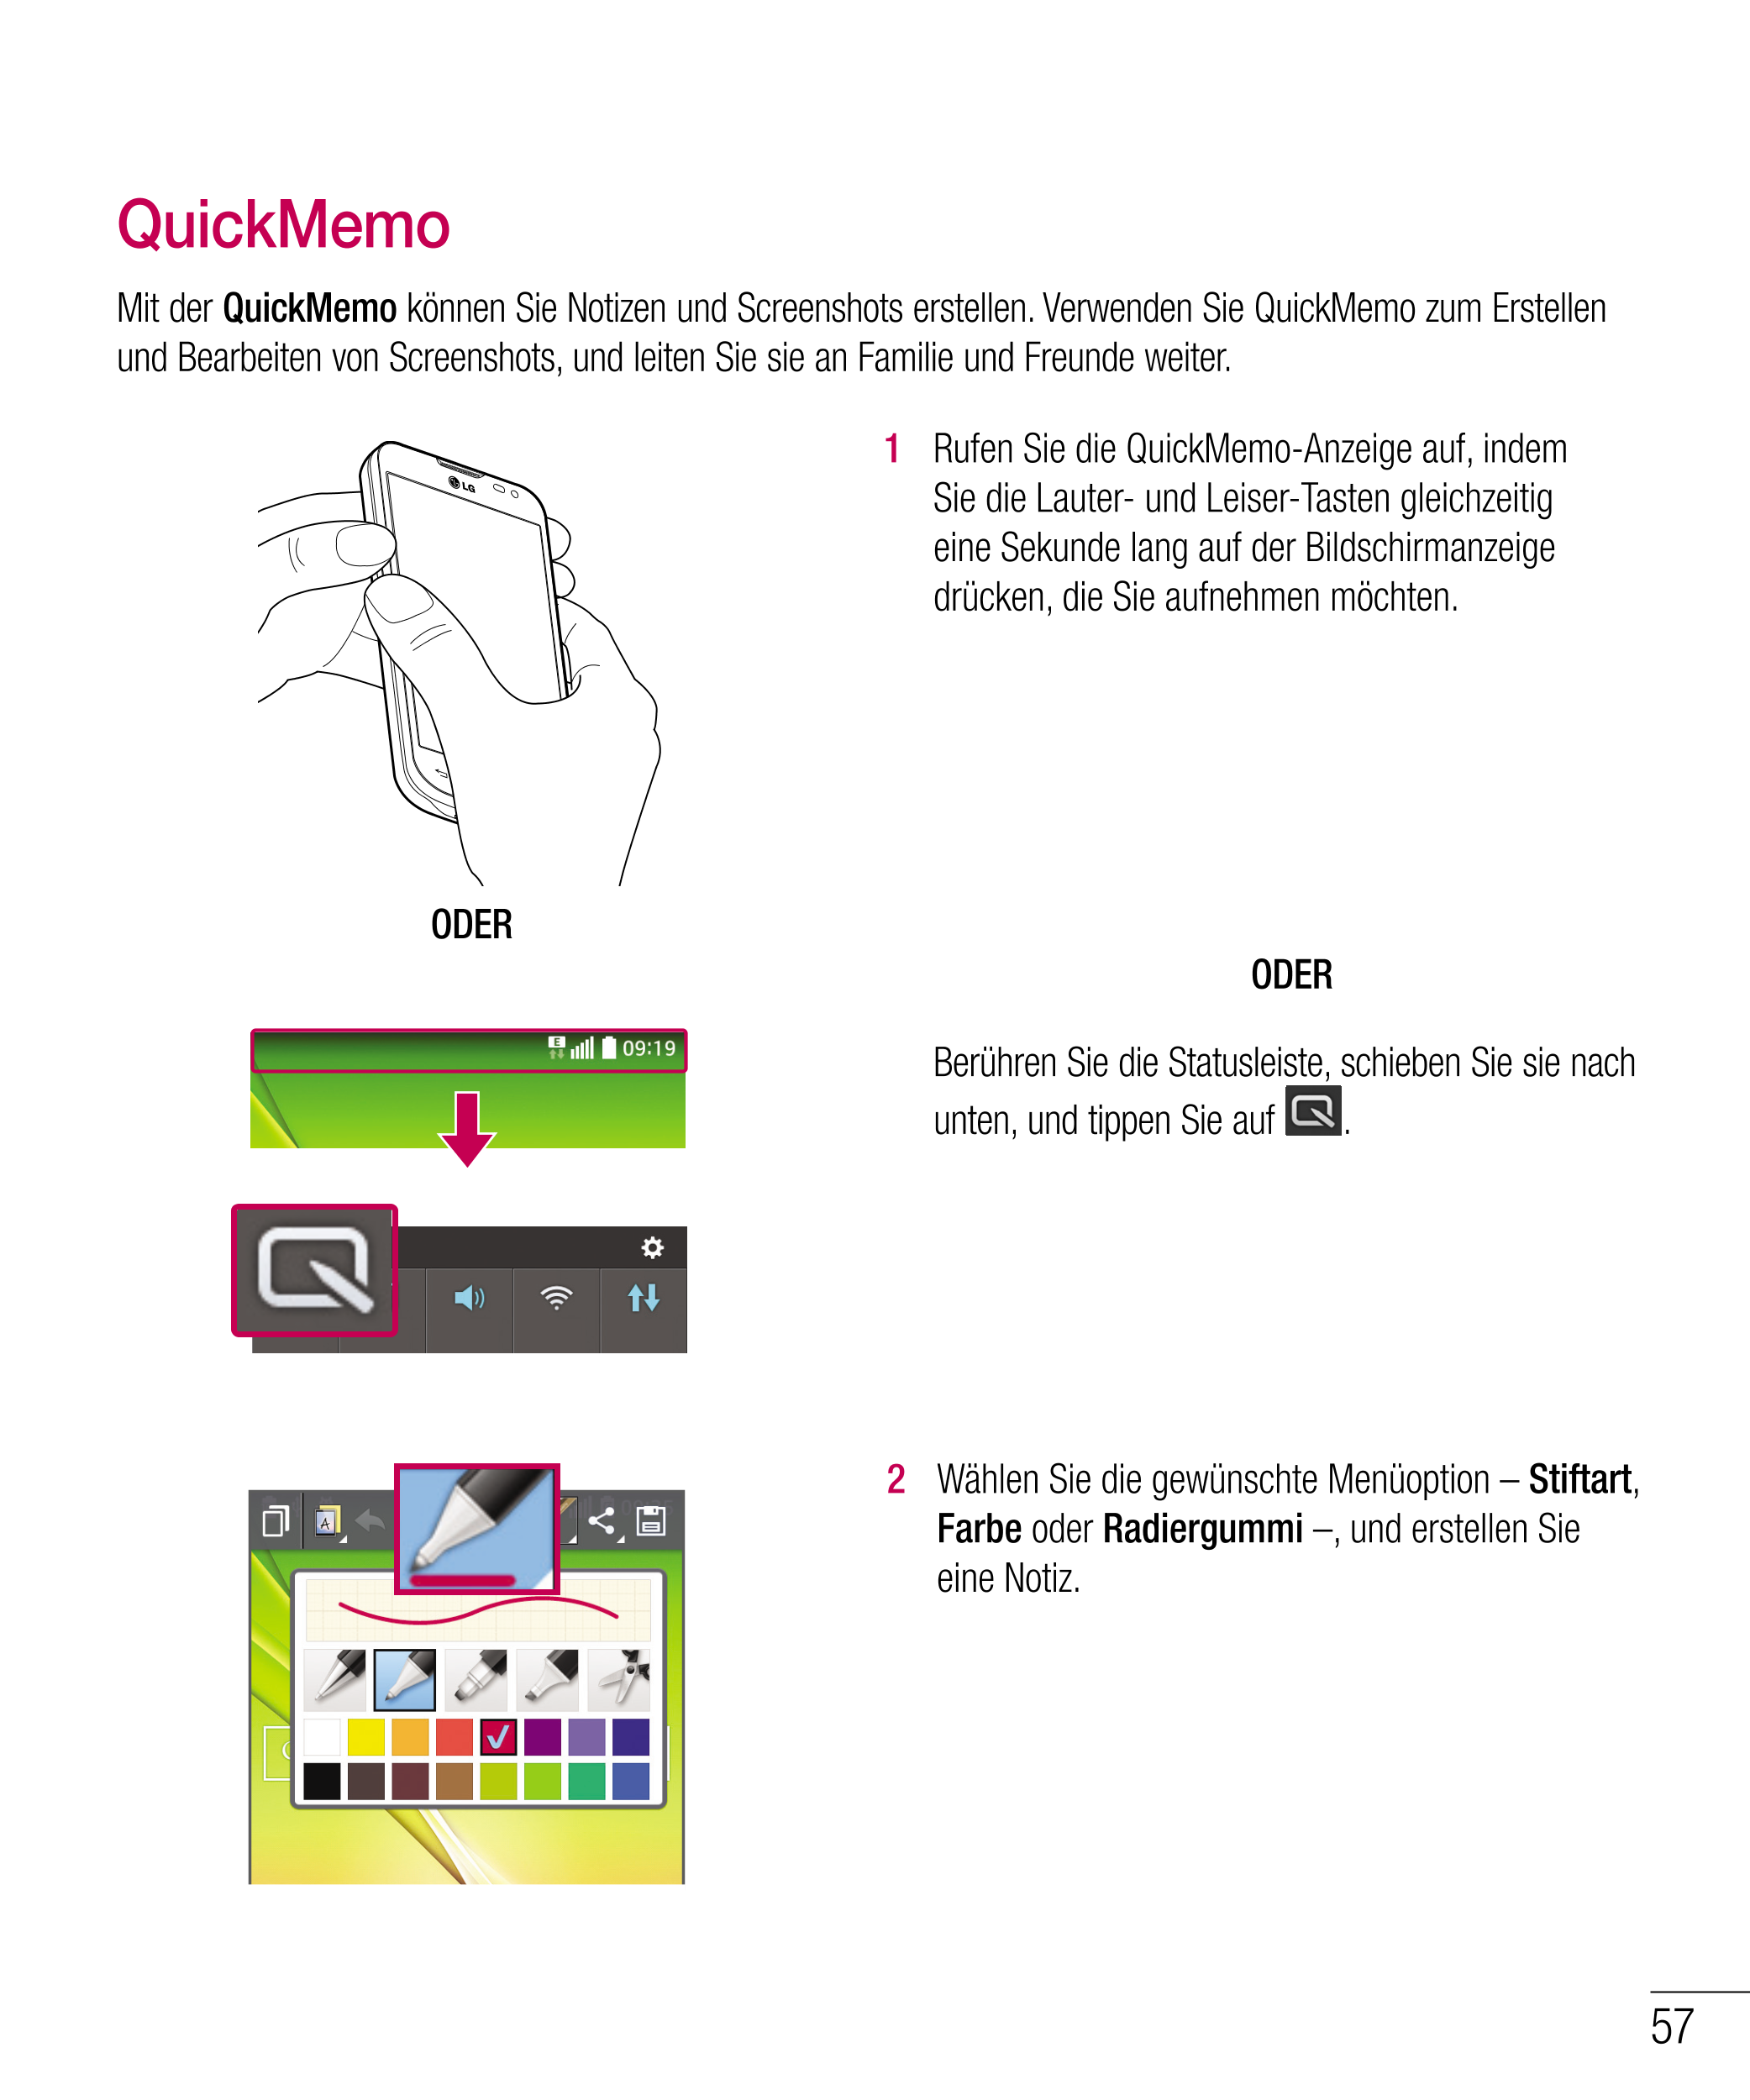 QuickMemo
Mit der  QuickMemo können Sie Notizen und Screenshots erstellen. Verwenden Sie QuickMemo zum Erstellen 
und Bearbeiten